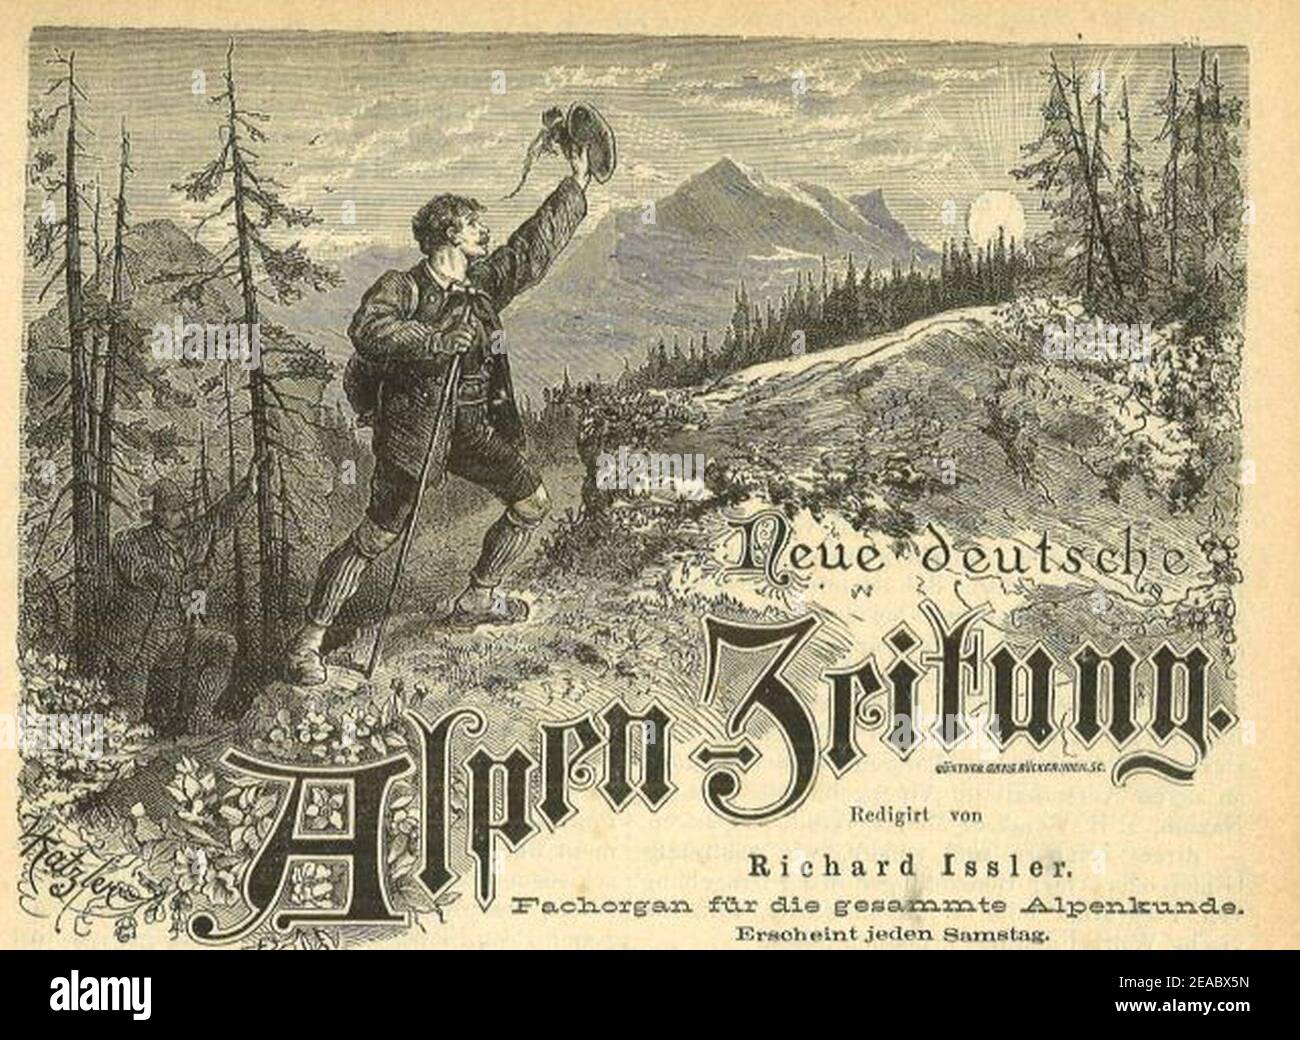 Neue deutsche alpen zeitung. Stock Photo